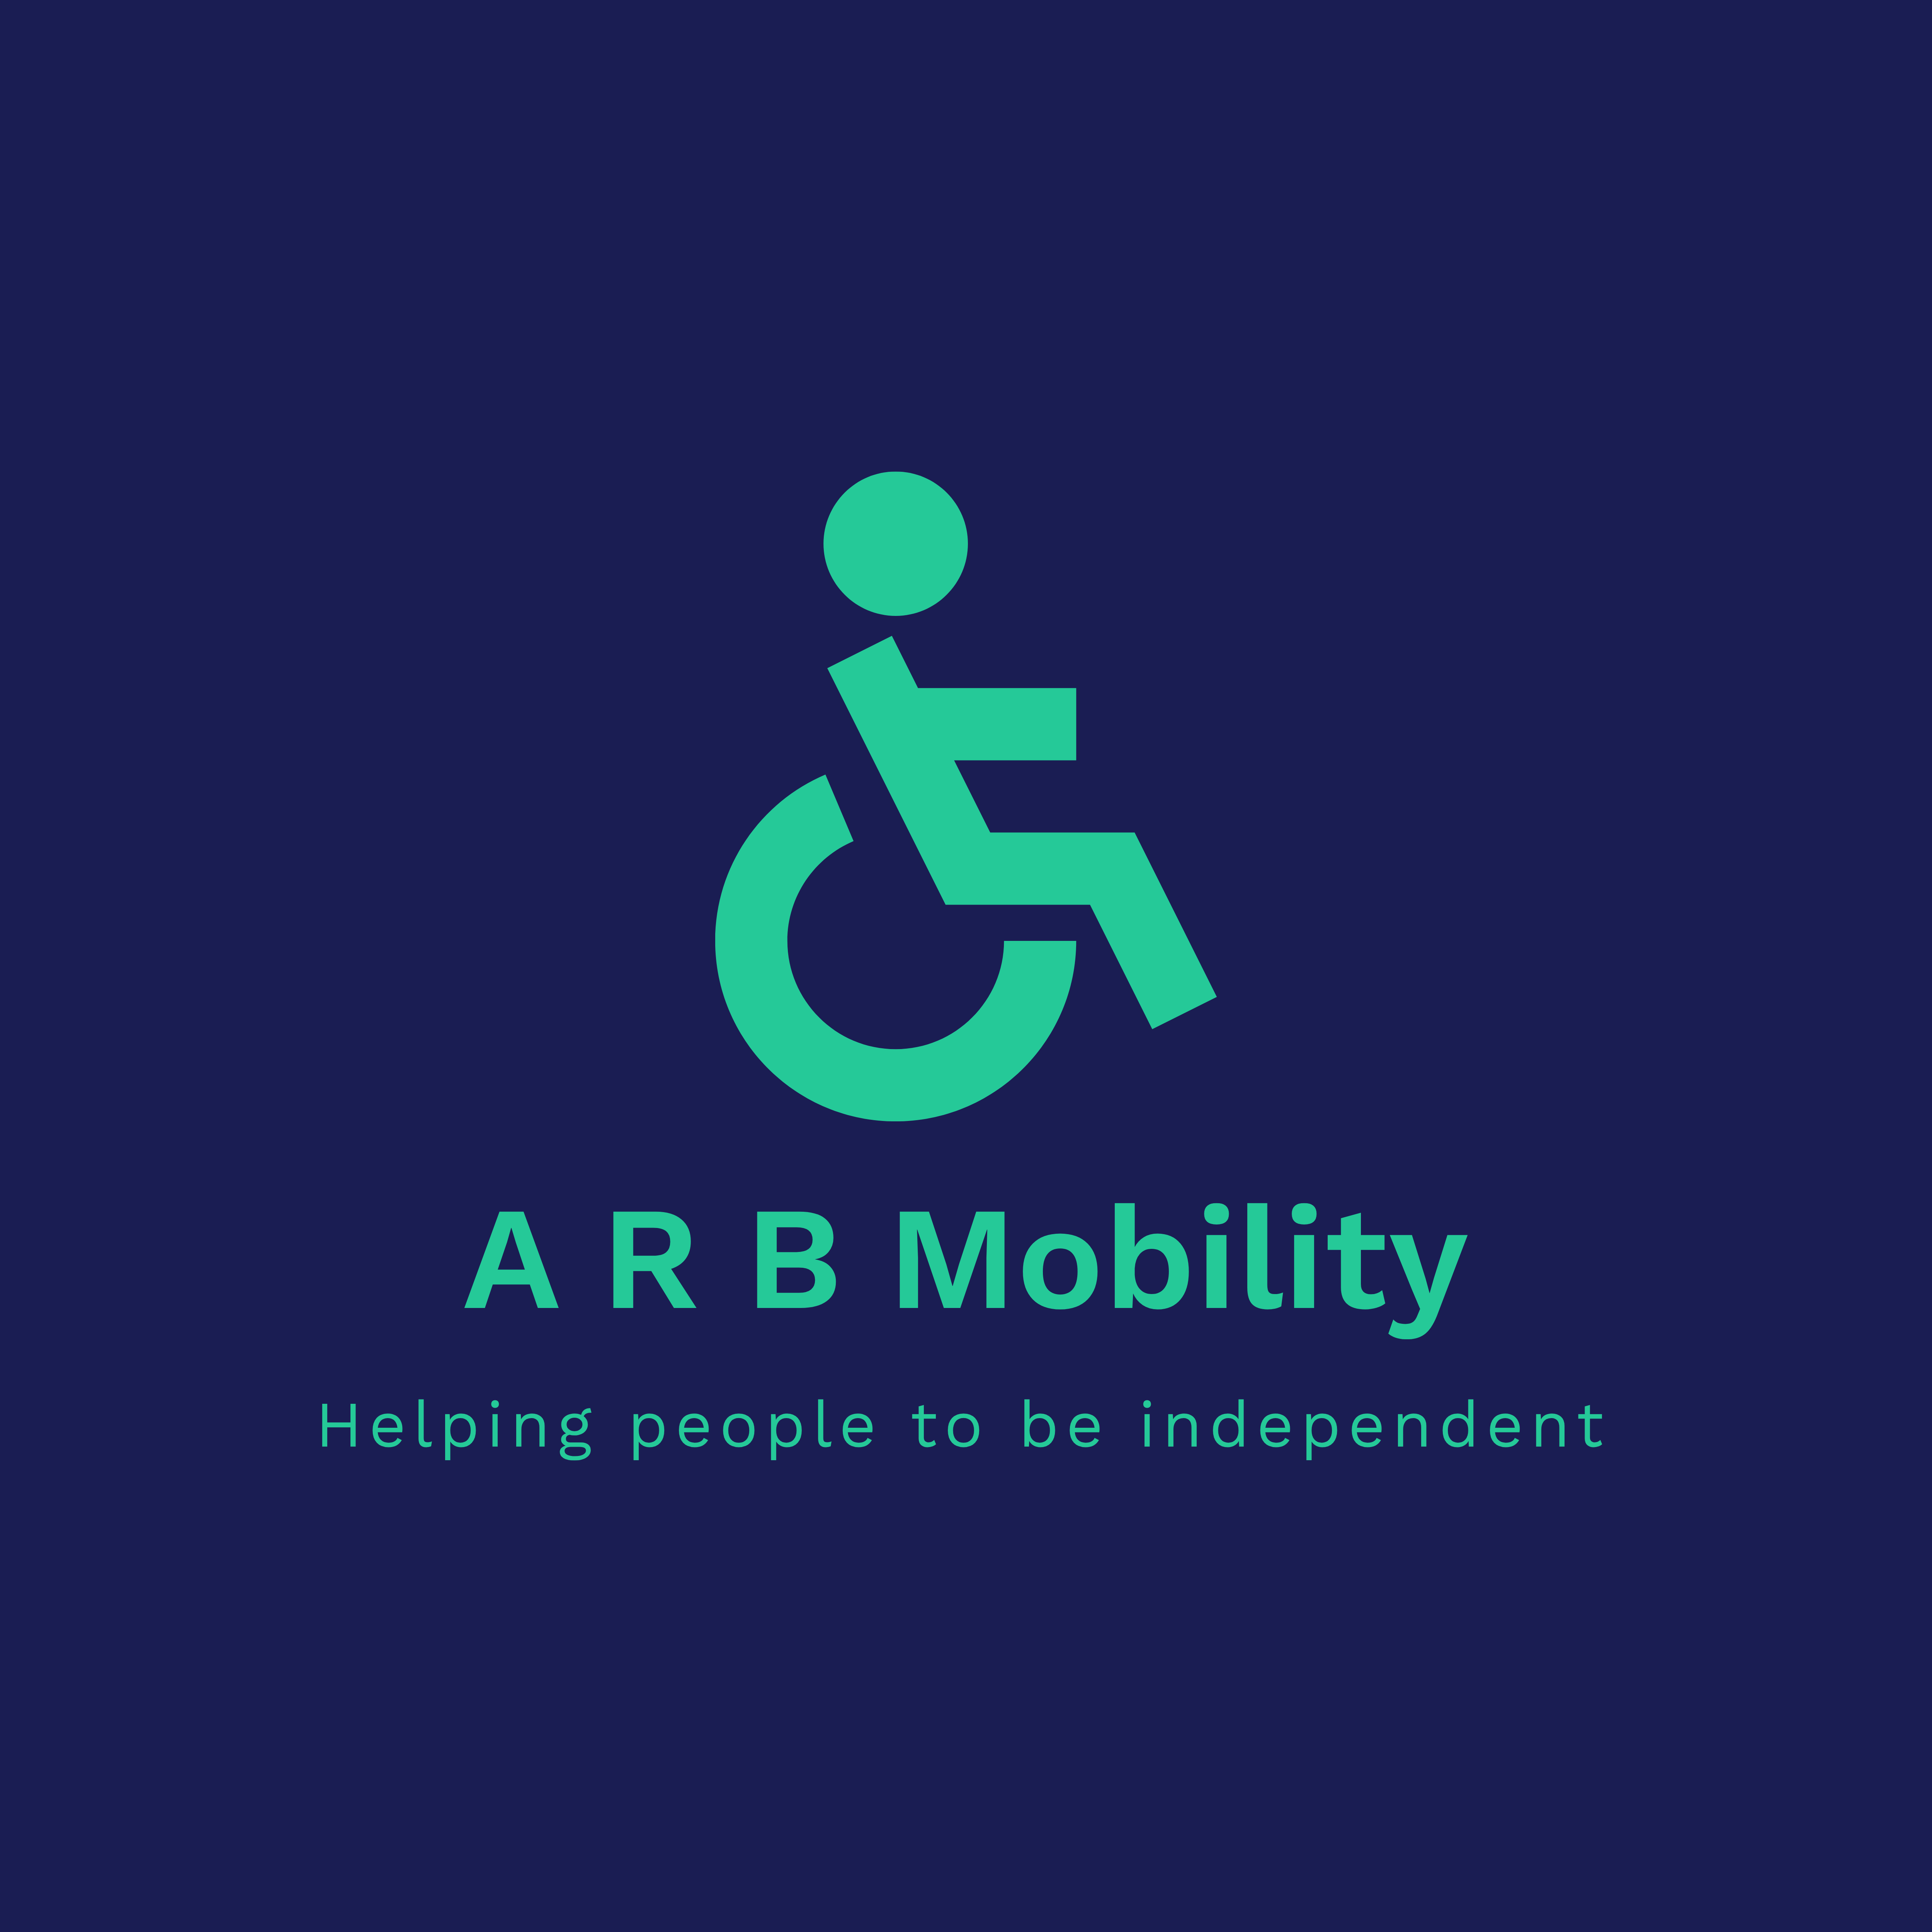 ARB Mobility